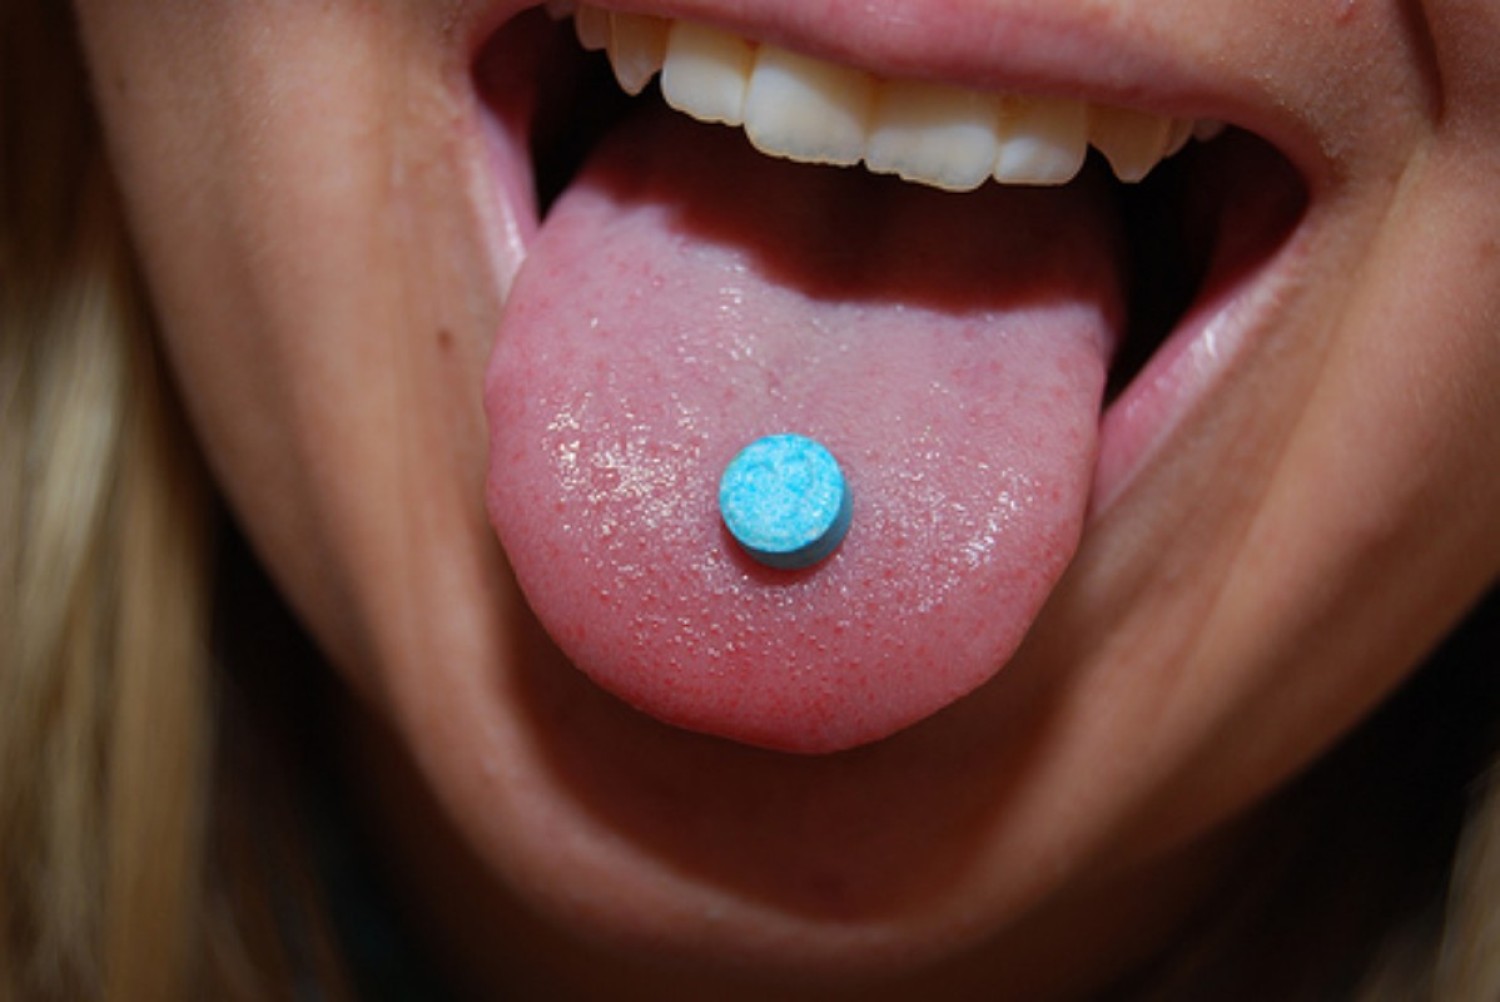 Party nieuws: Gevaarlijke xtc-pillen in omloop. Be aware!